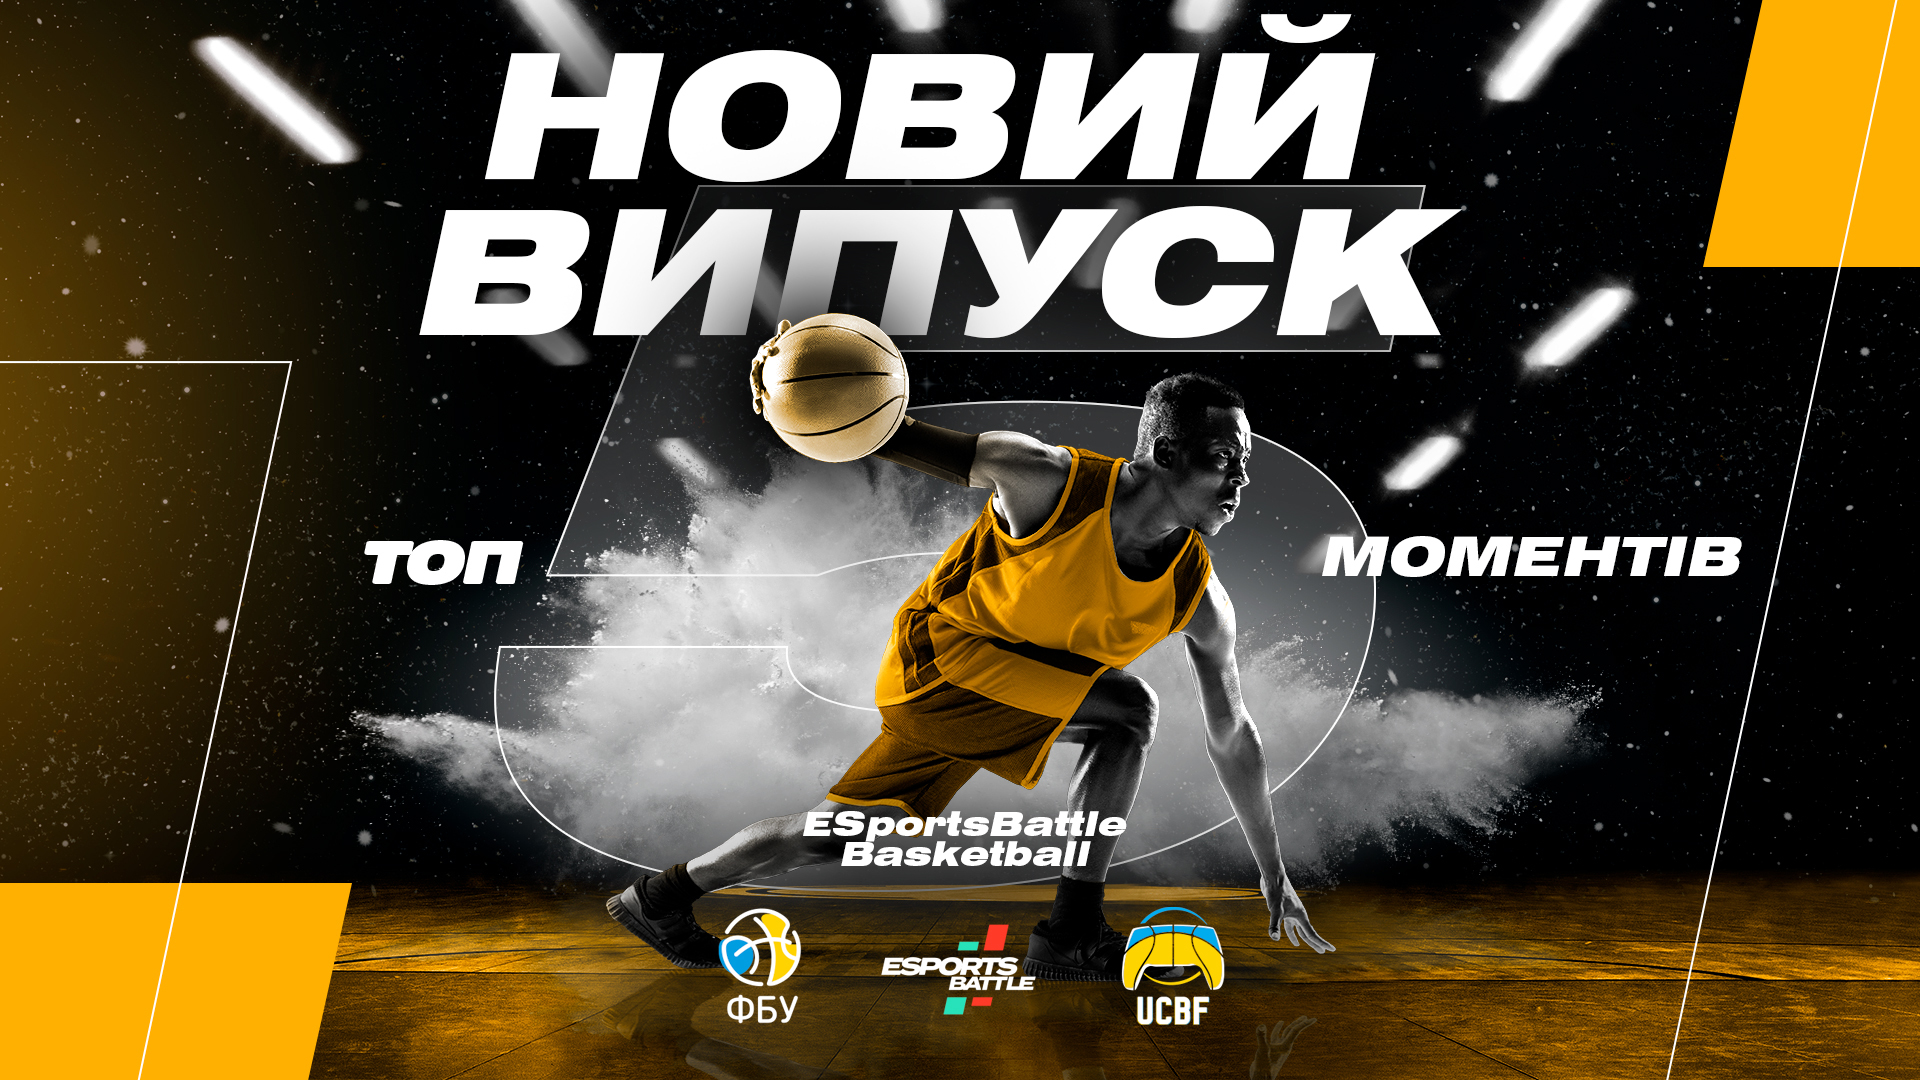 ТОP-5 Moments ESportsBattle | BASKETBALL: хайлайти від найкращих кібербаскетболістів країни